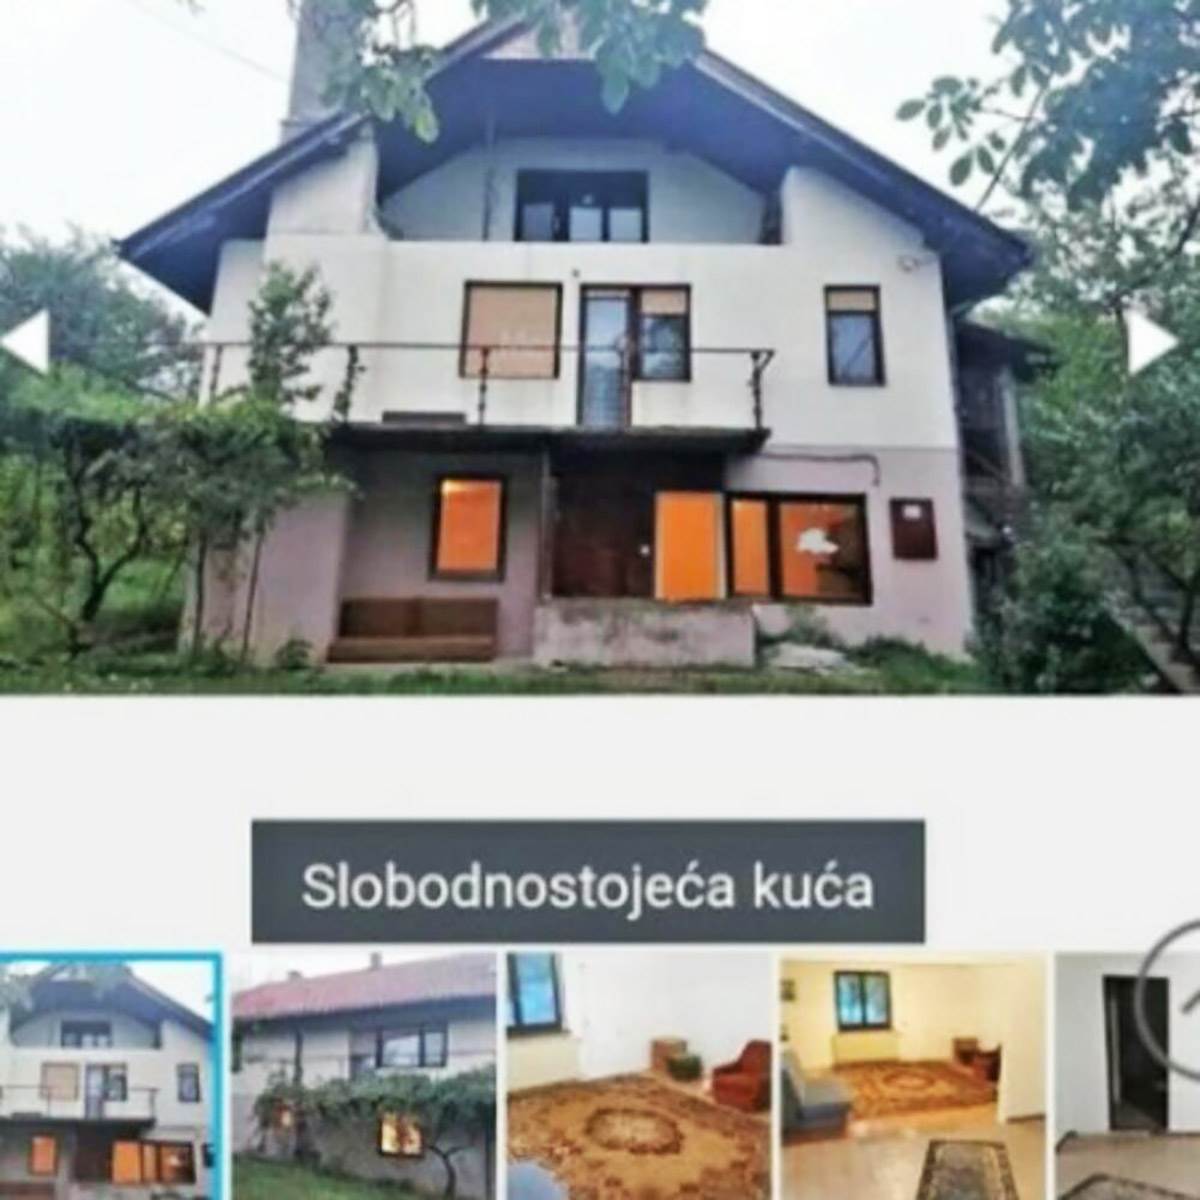  Oglas za kuću u Barajevu 